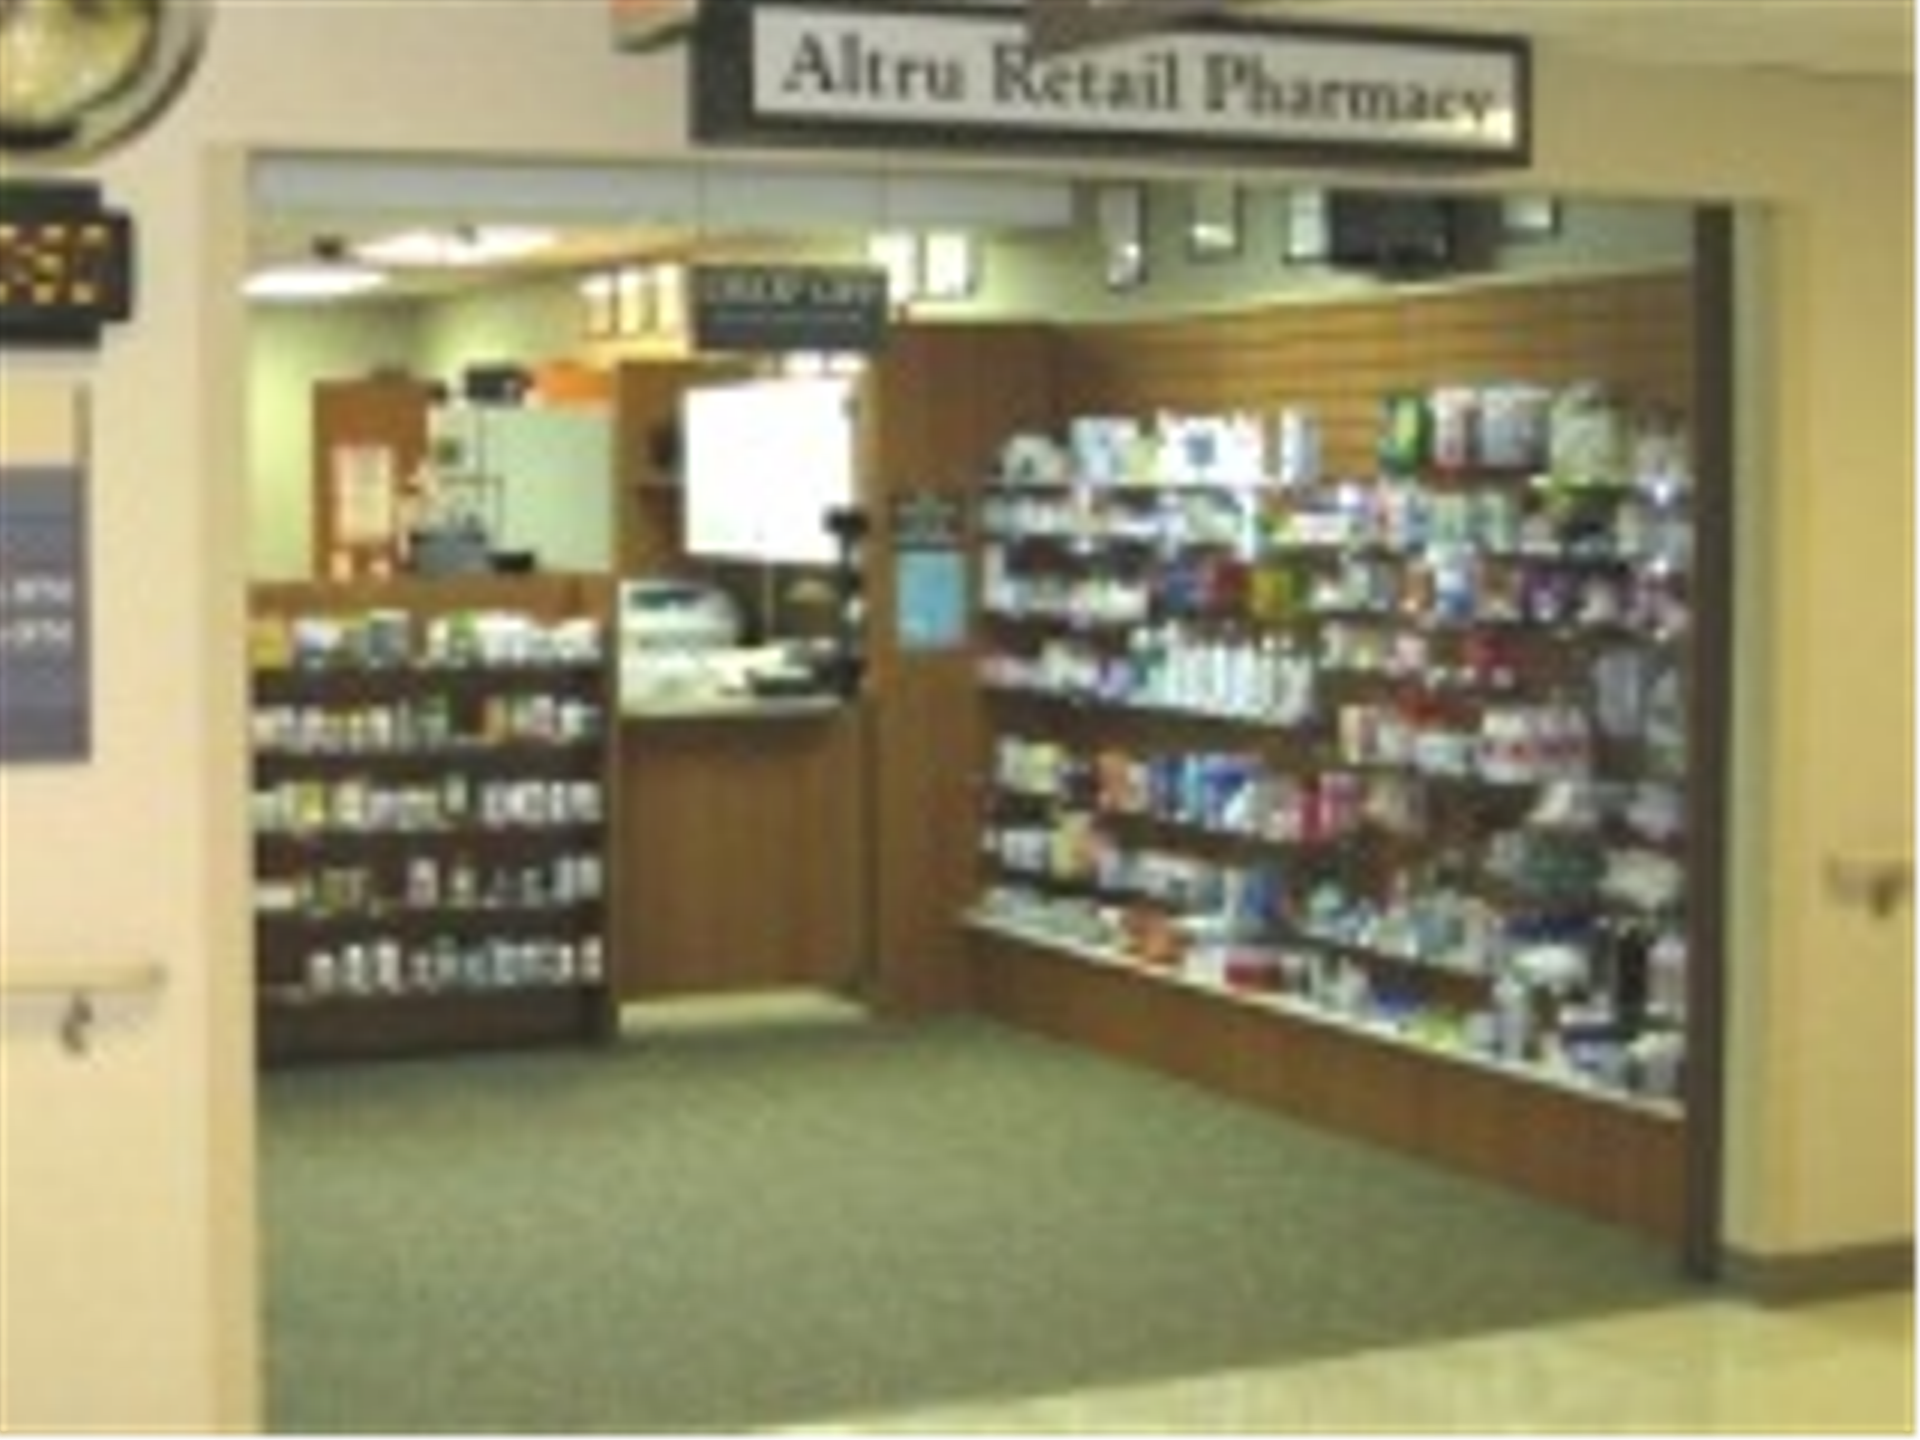 Altru Retail Pharmacy - Grand Forks, ND 58201 - (701)780-3444 | ShowMeLocal.com